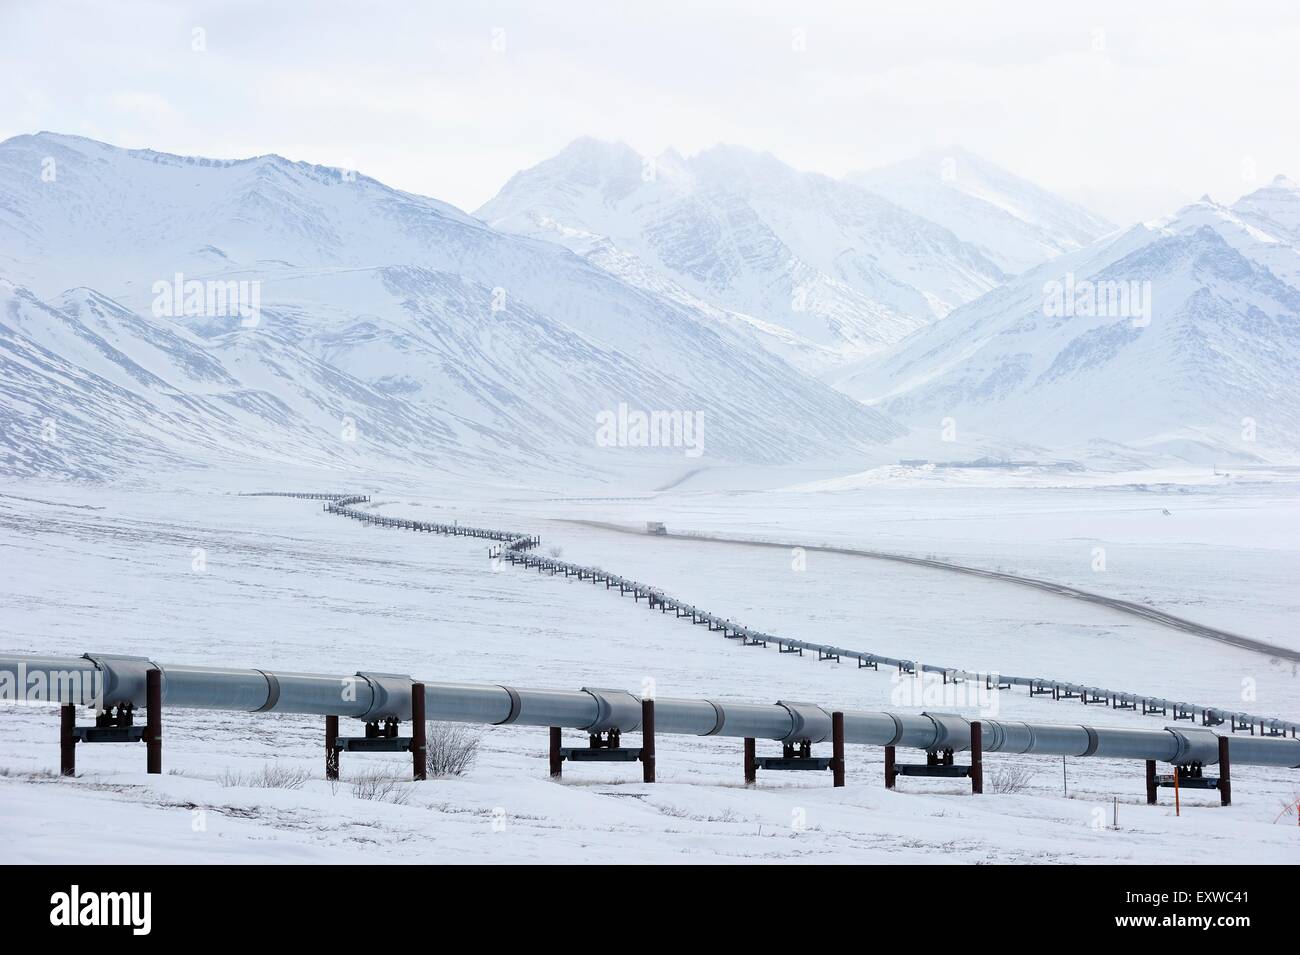 Pipeline de pétrole de Prudhoe Bay à Valdez dans l'hiver arctique le long de la Dalton Highway, route, Alaska, USA Banque D'Images